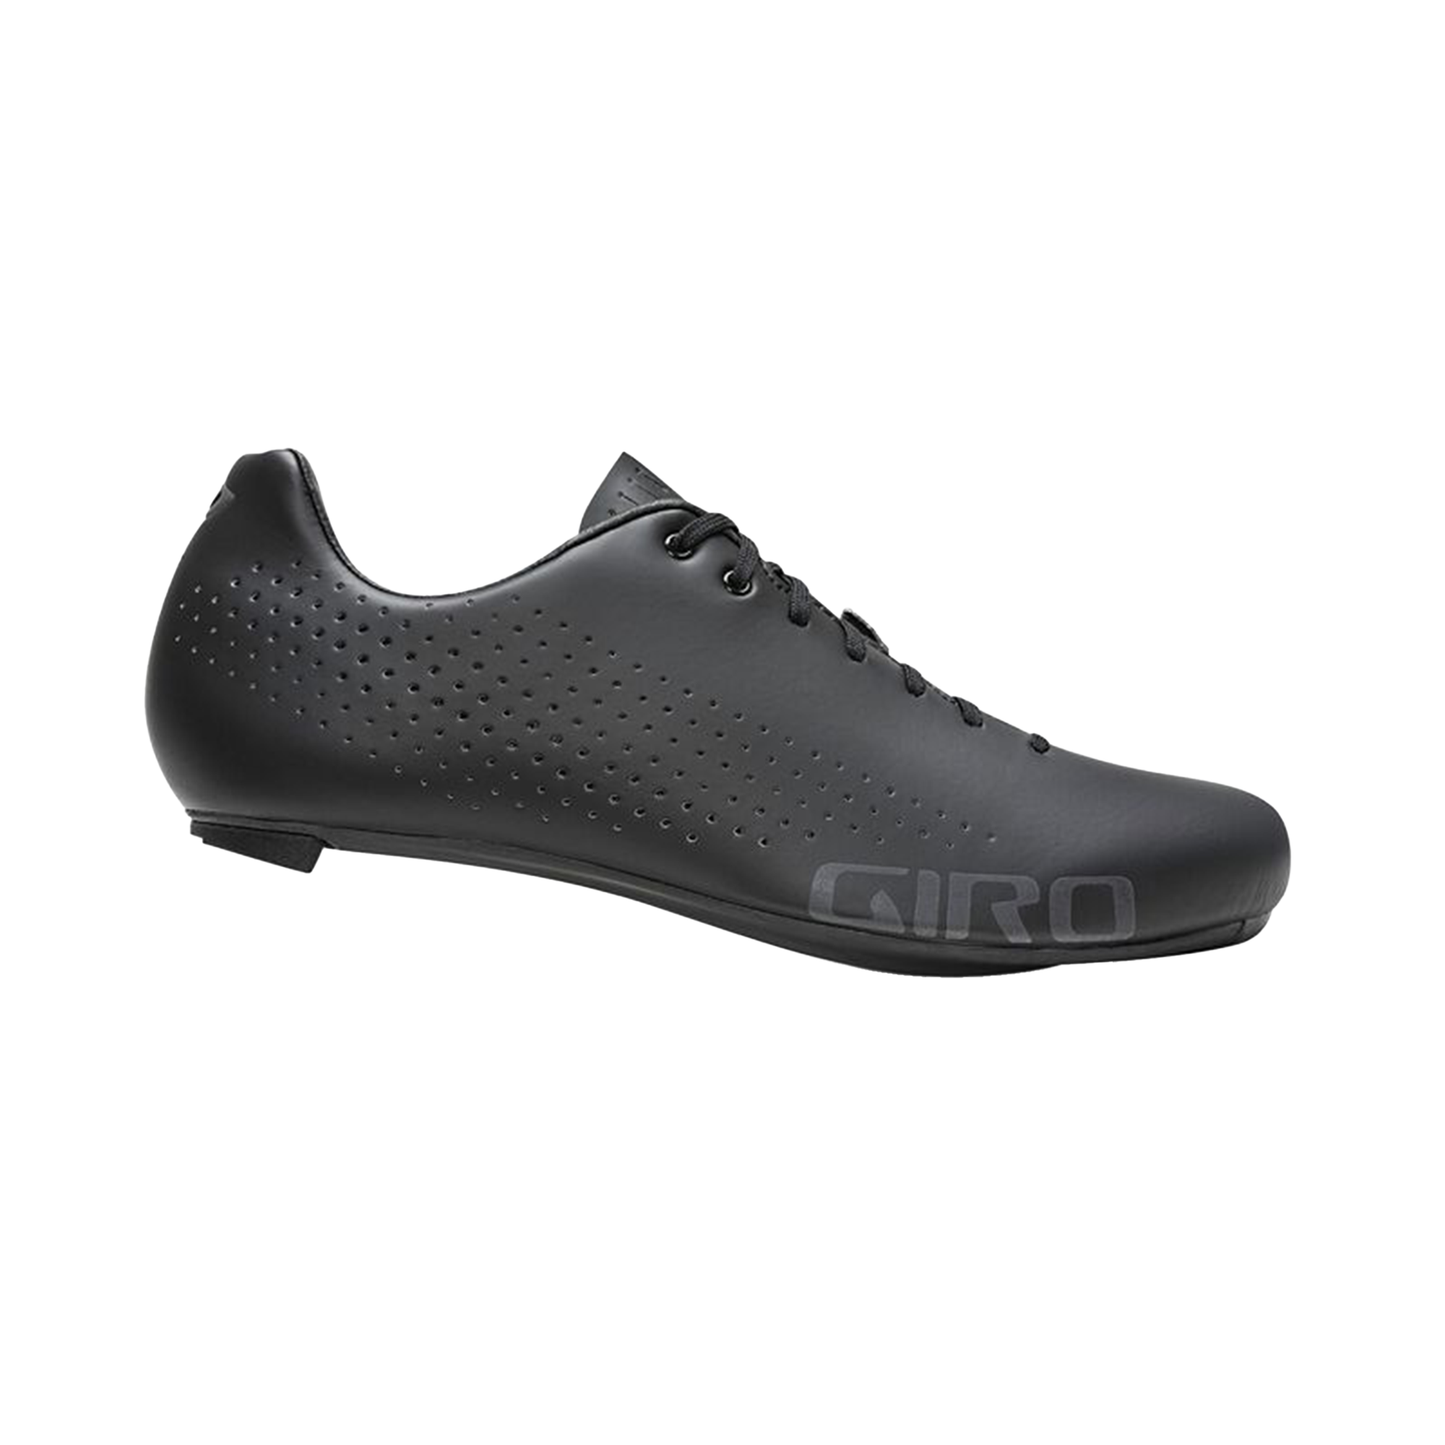 Giro Empire Shoe Black Bike Shoes